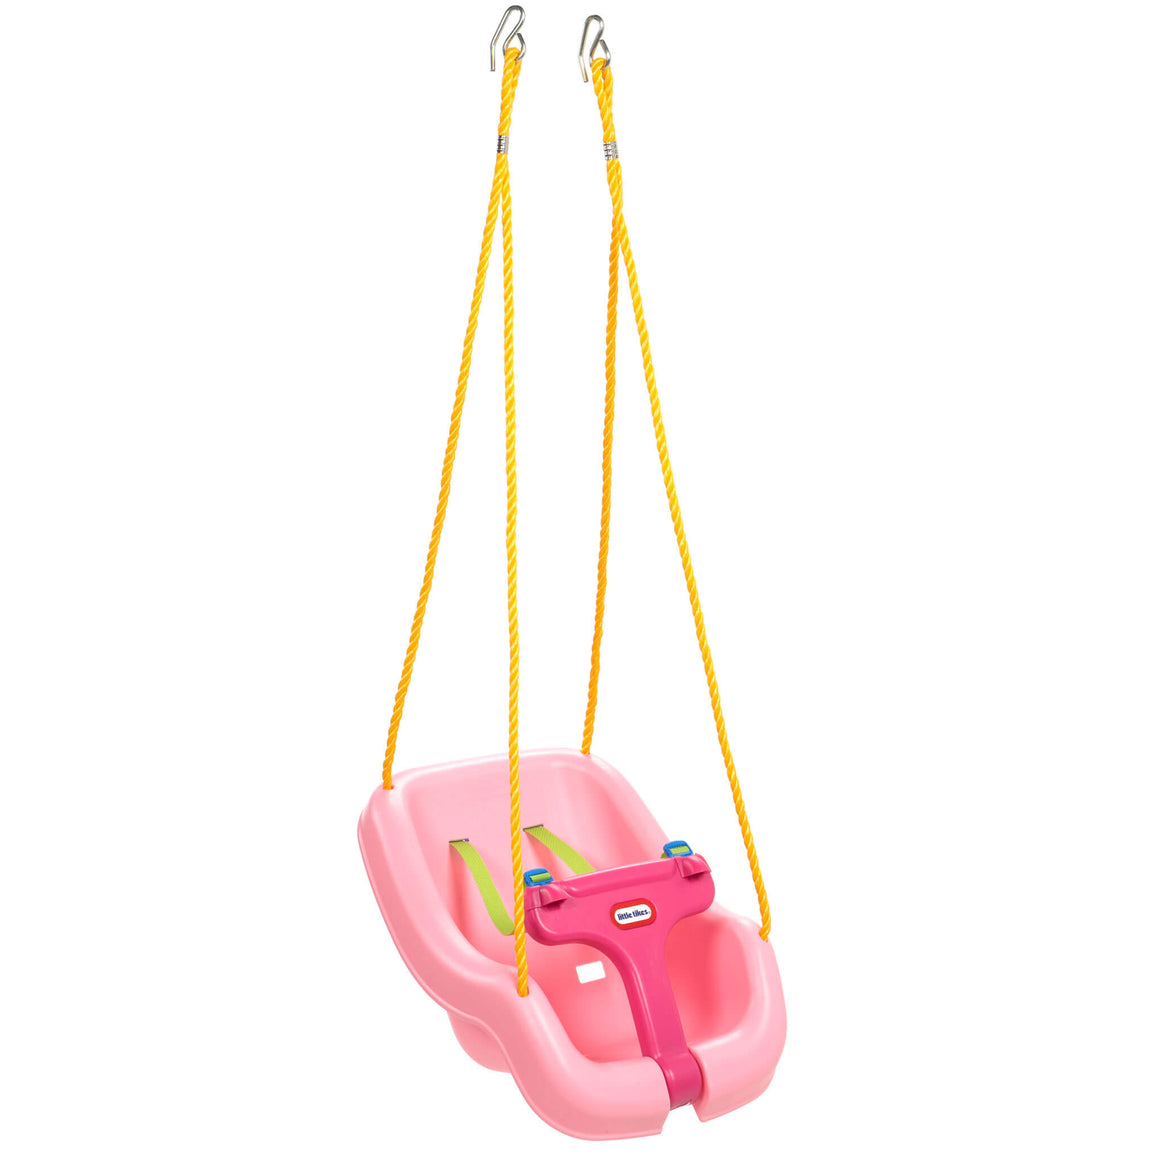 2-in-1 Snug 'n Secure™ Swing - Pink - Official Little Tikes Website